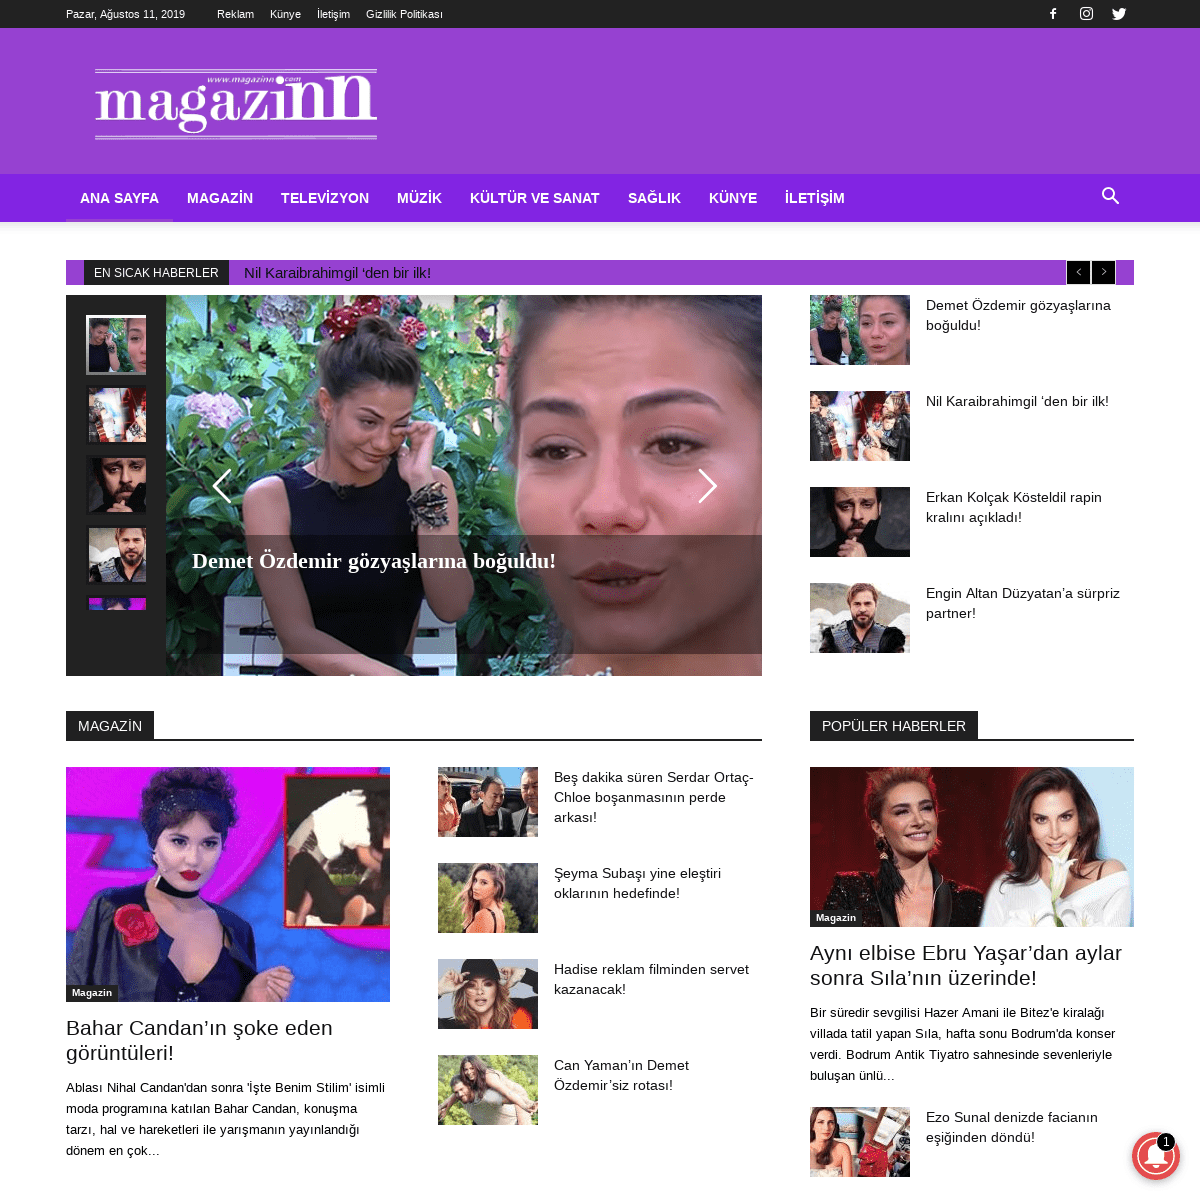 Magazinn.com - Magazin ve Medya dünyasından en son haberler